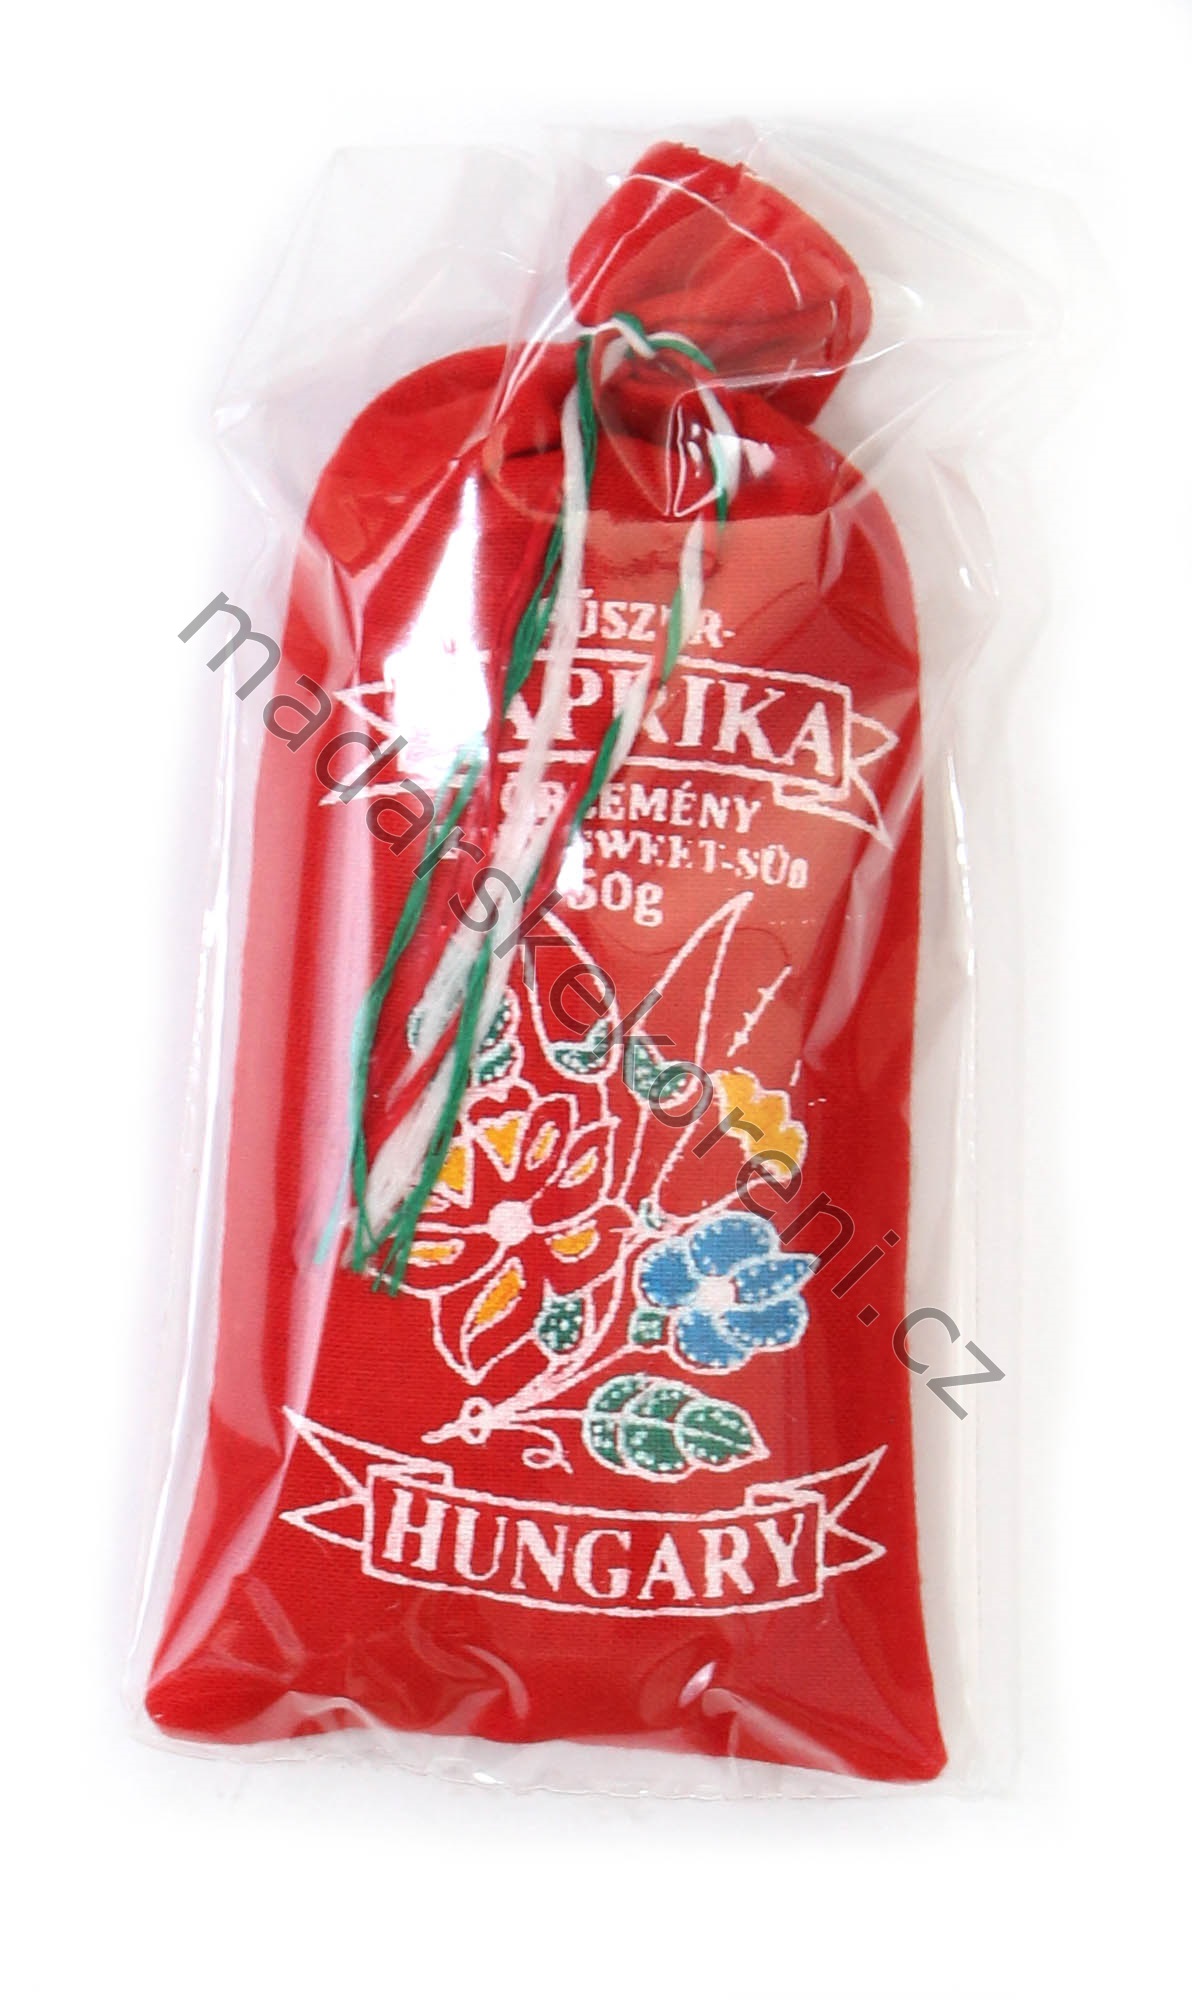 Maďarská paprika nepálivá (sladká) v lněném pytlíku 